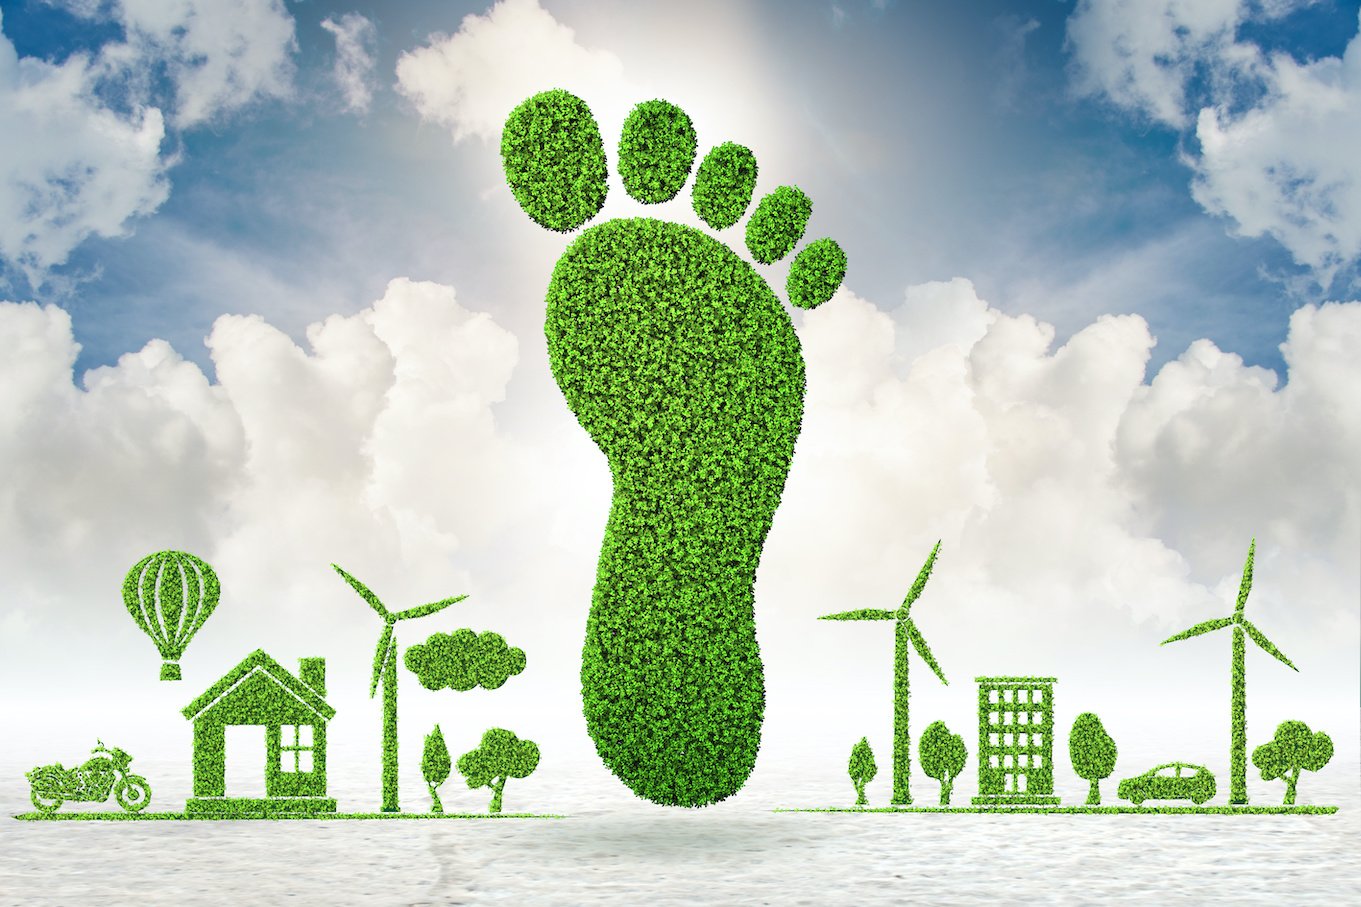 Bouwen met een minimale ecologische voetafdruk — Mobble